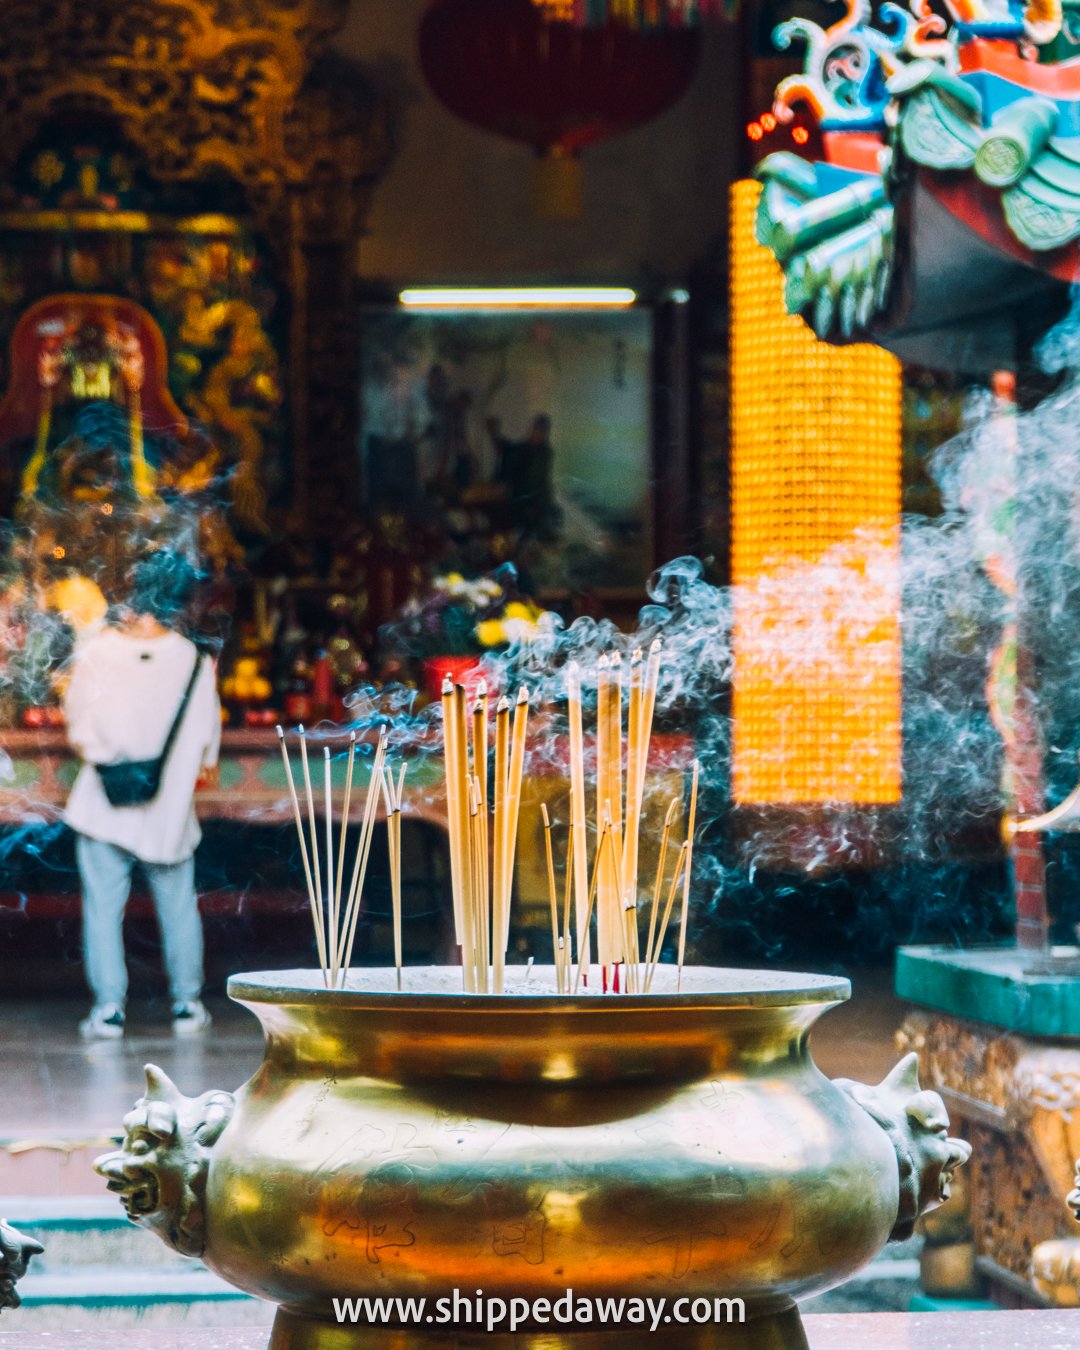 Temple hopping in Chinatown in Kuala Lumpur, Malaysia